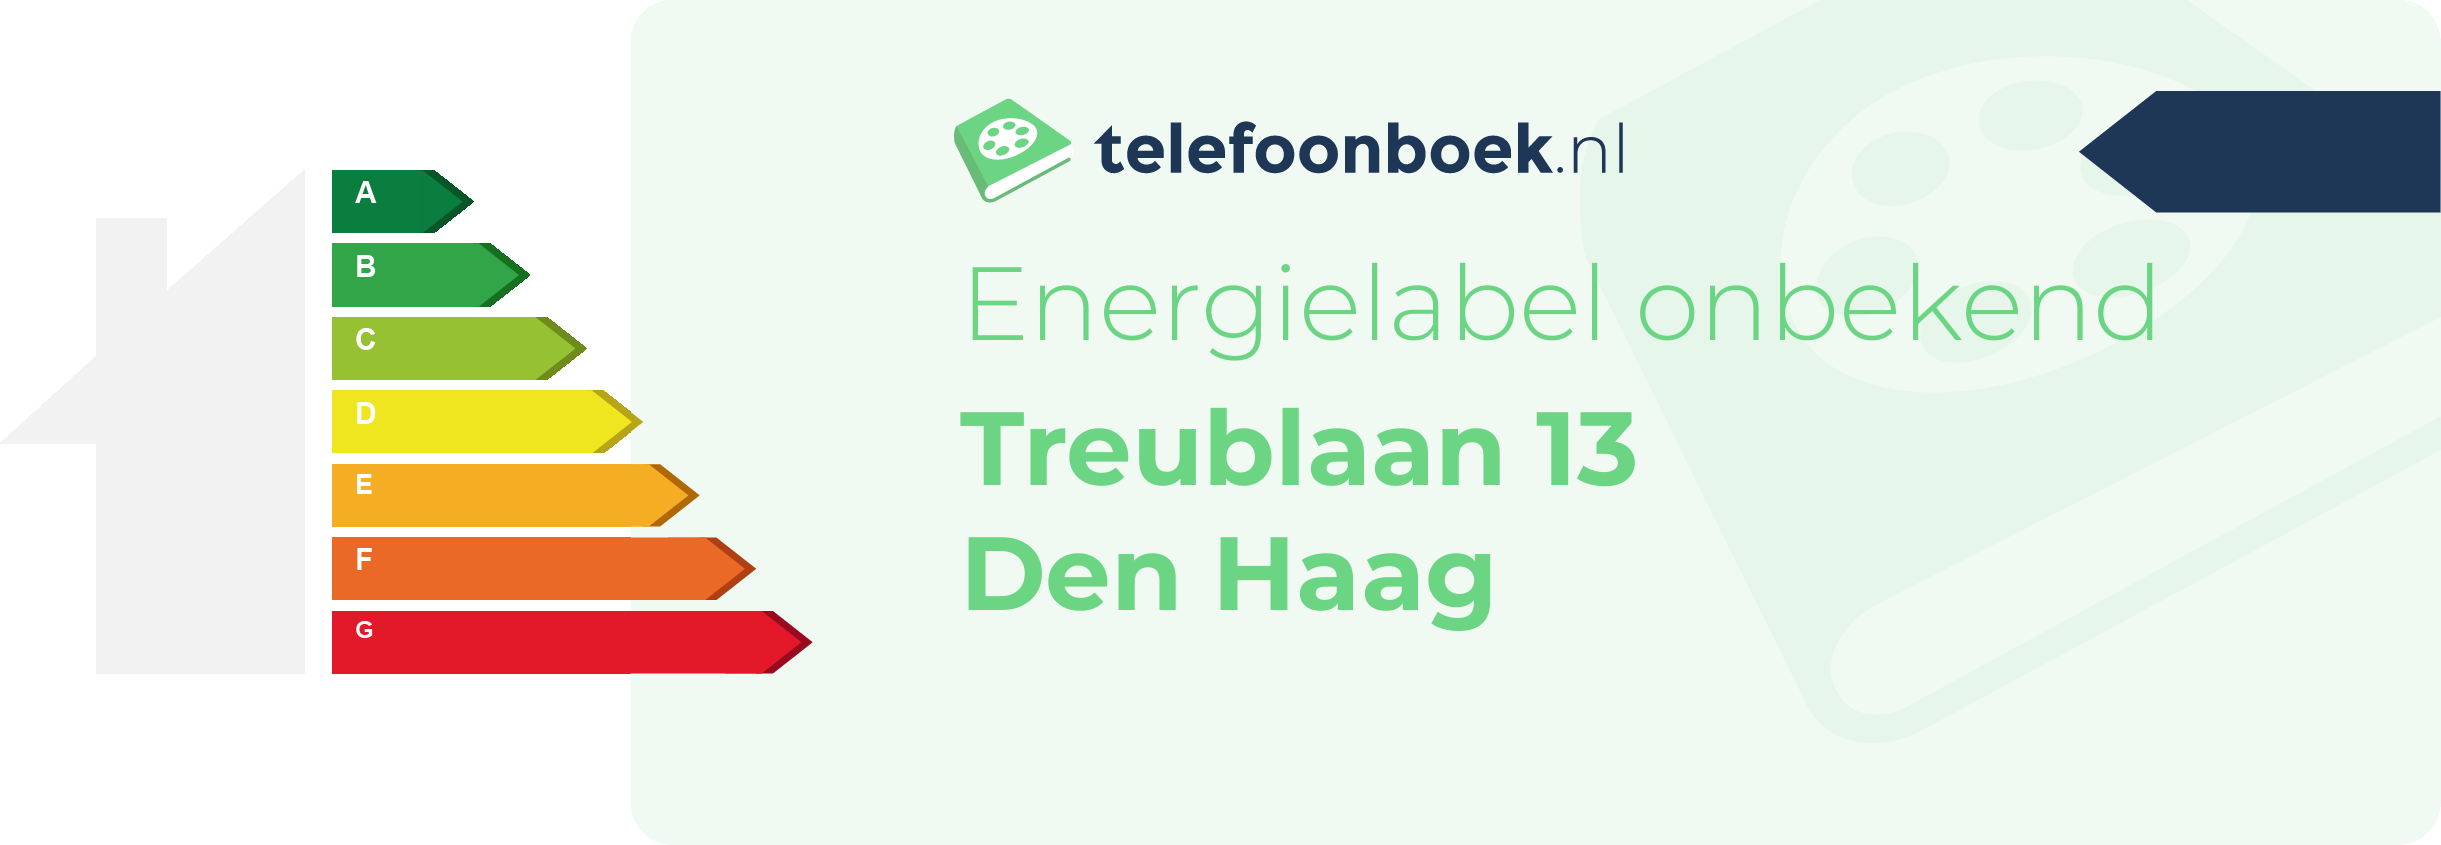 Energielabel Treublaan 13 Den Haag